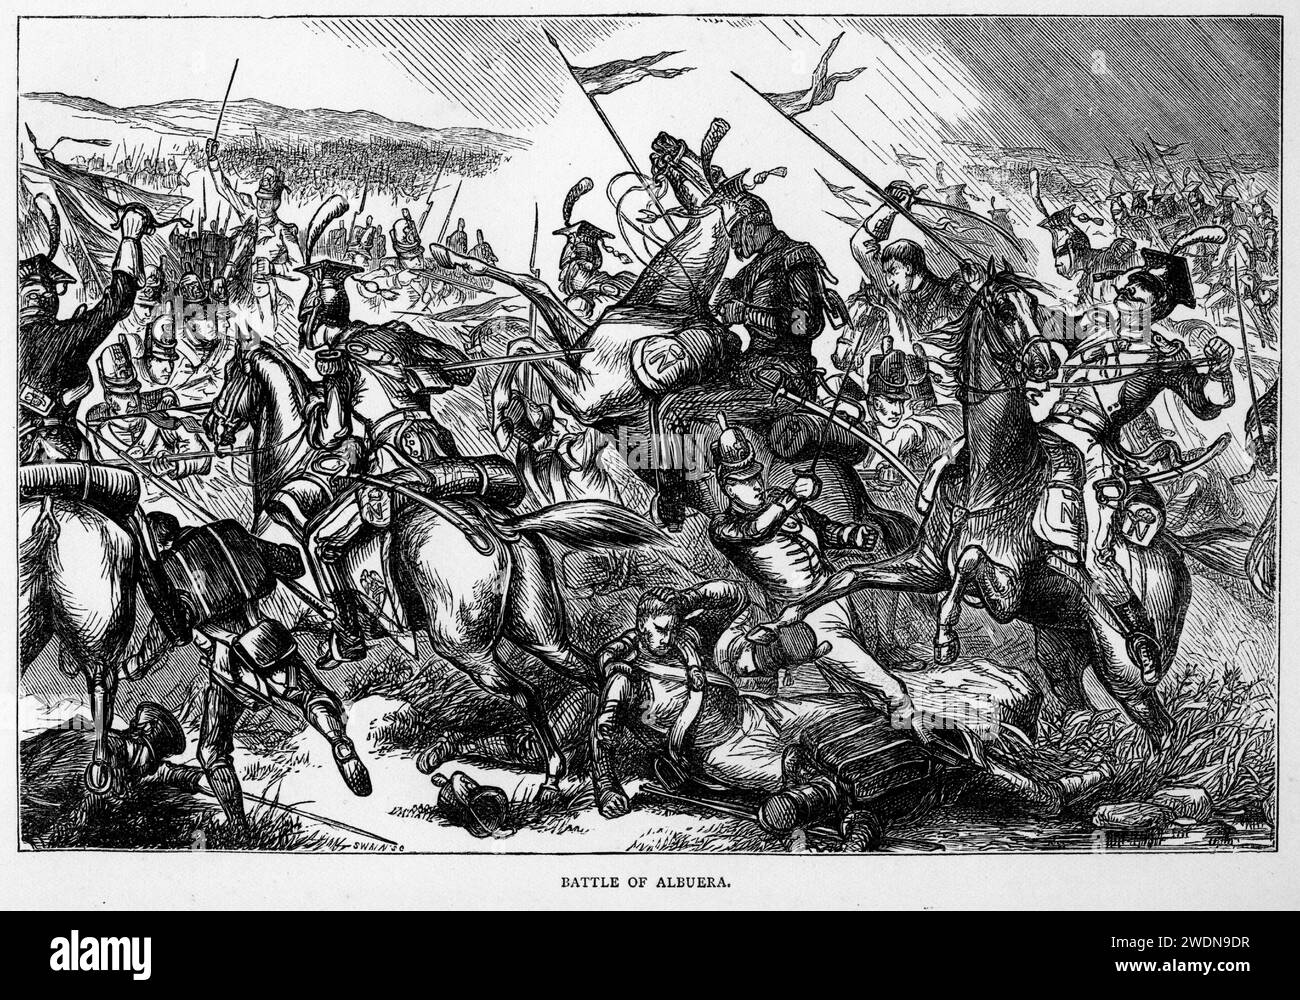 La bataille d'Albuera (16 mai 1811) a eu lieu pendant la guerre péninsulaire. Un corps mixte britannique, espagnol et portugais engagea des éléments de l'Armée du midi dans le petit village espagnol d'Albuera, à environ 20 kilomètres (12 mi) au sud de la forteresse frontière de Badajoz, en Espagne. Banque D'Images